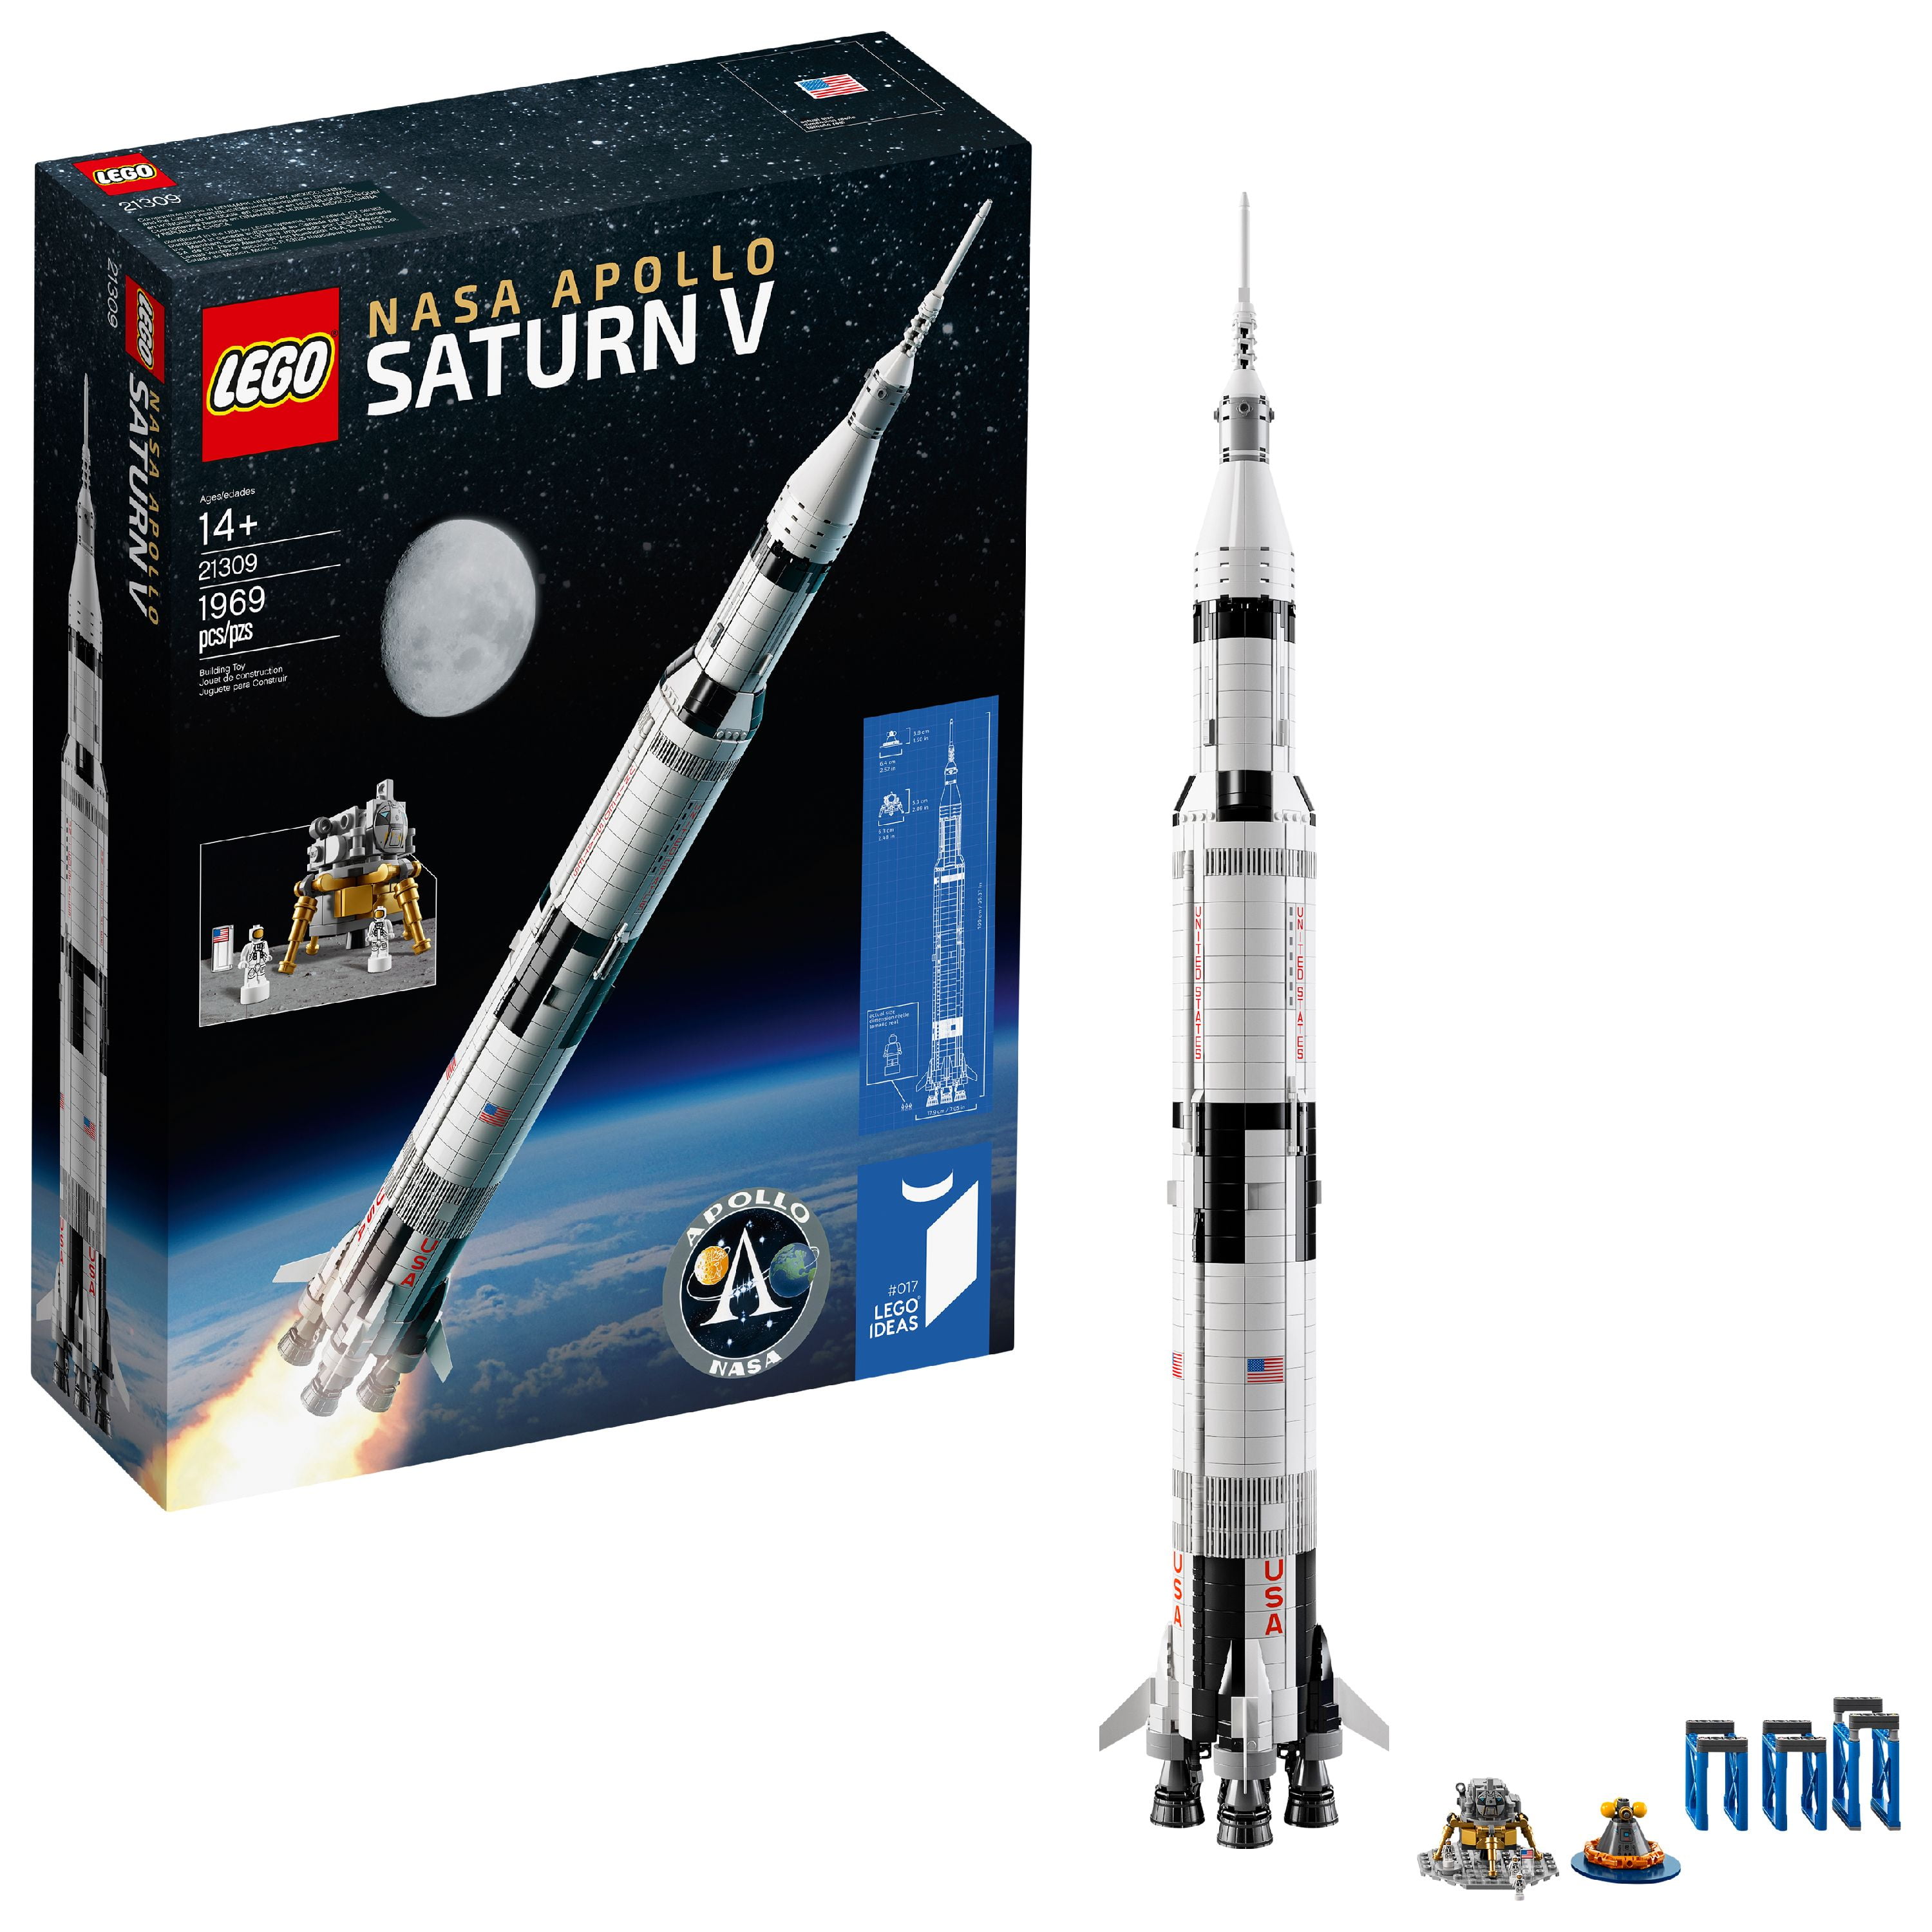 LEGO 92716 NASA APOLLO SATURN V ROCKET  NEW Sealed In Box 21309 